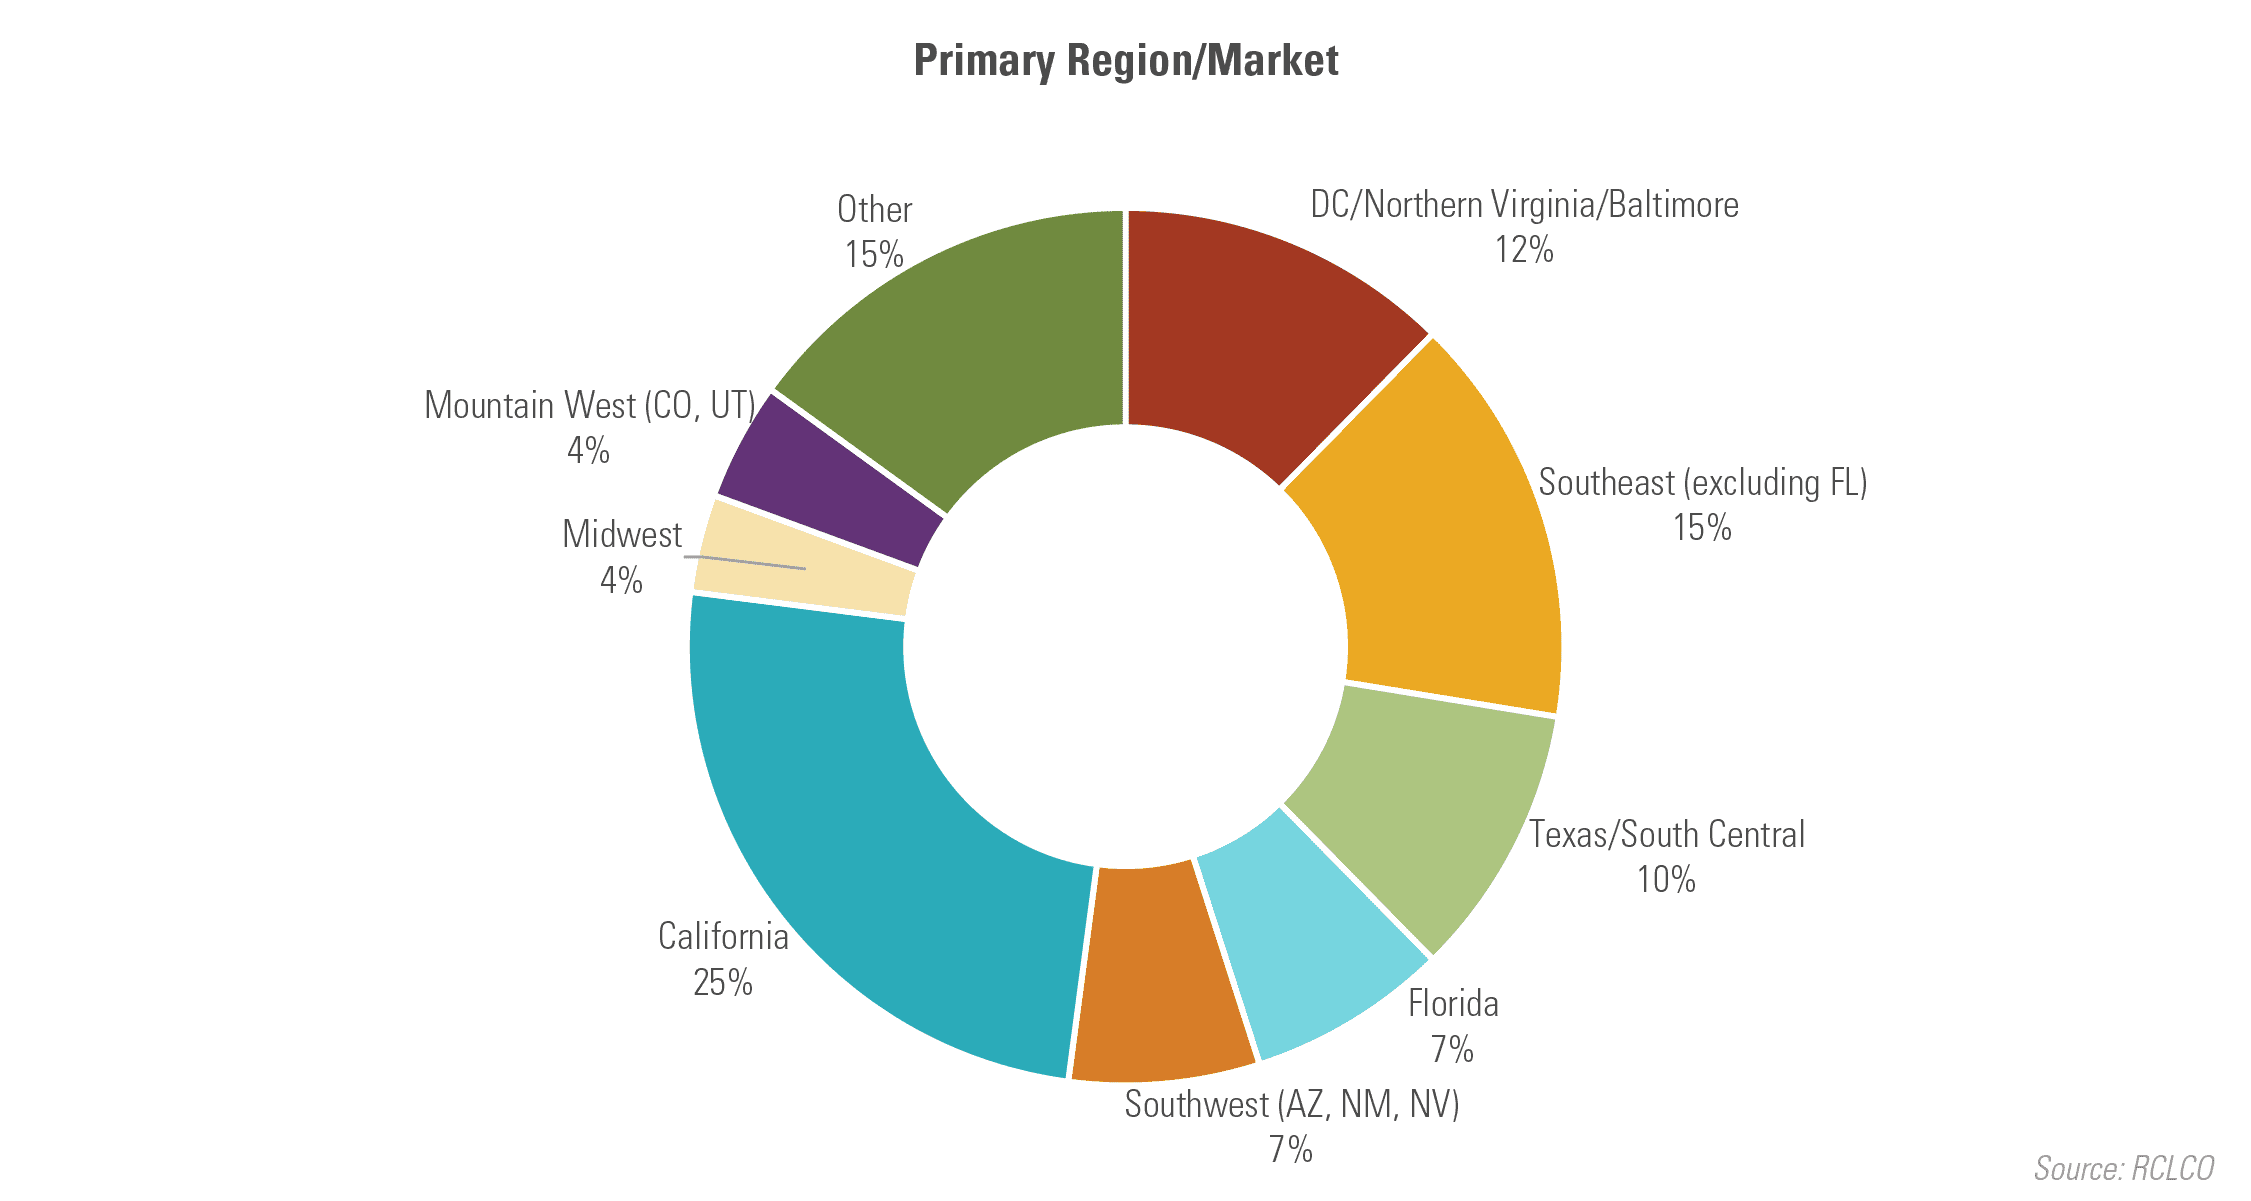 Primary Region/Market